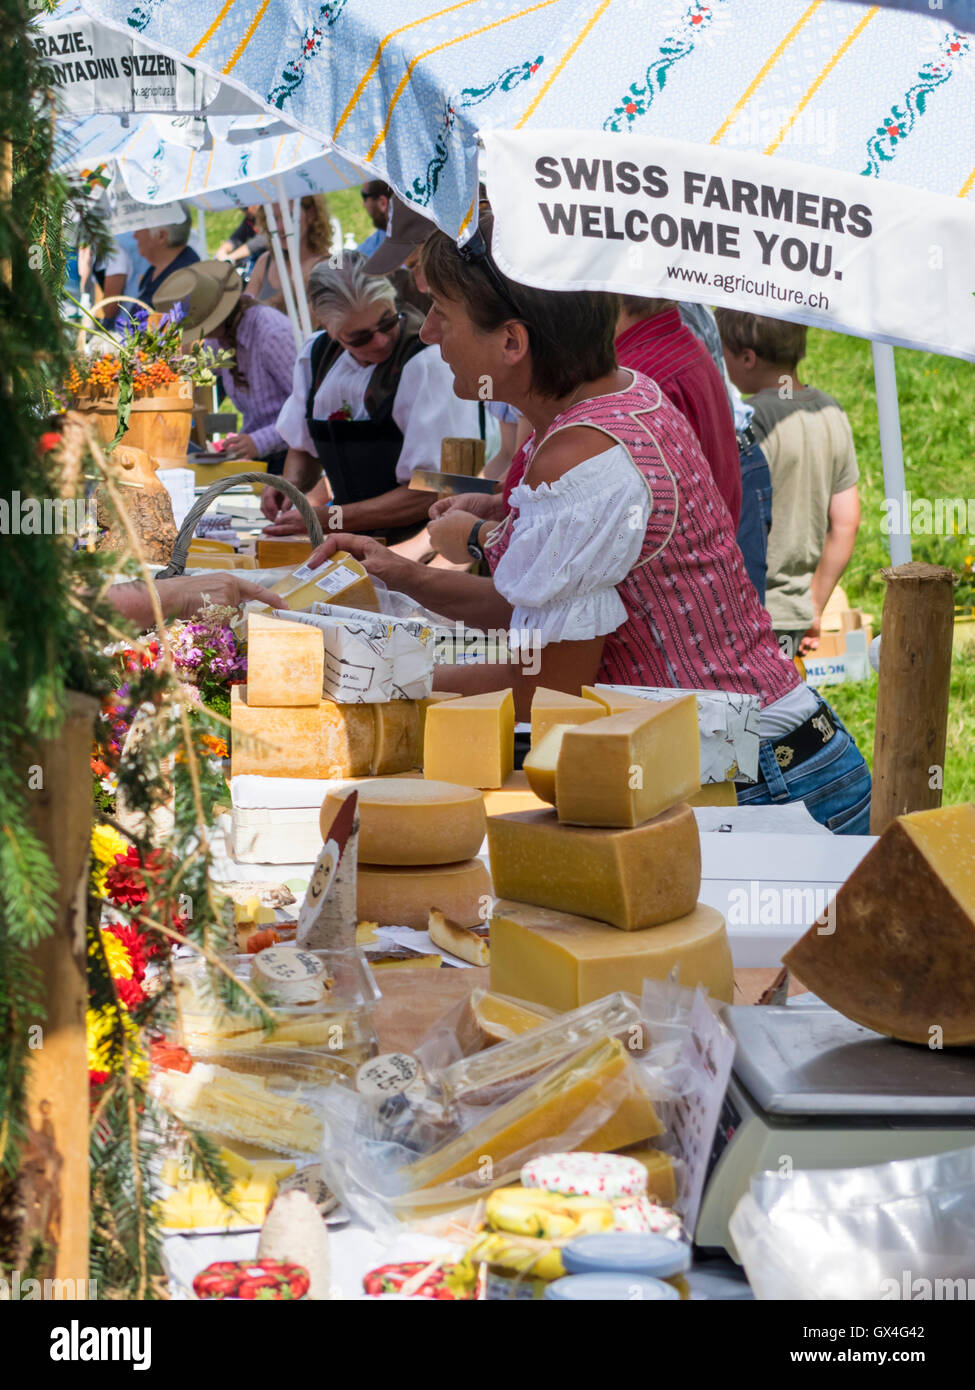 Différentes variétés de fromage suisse en vente sur un marché de producteurs en Suisse. Banque D'Images